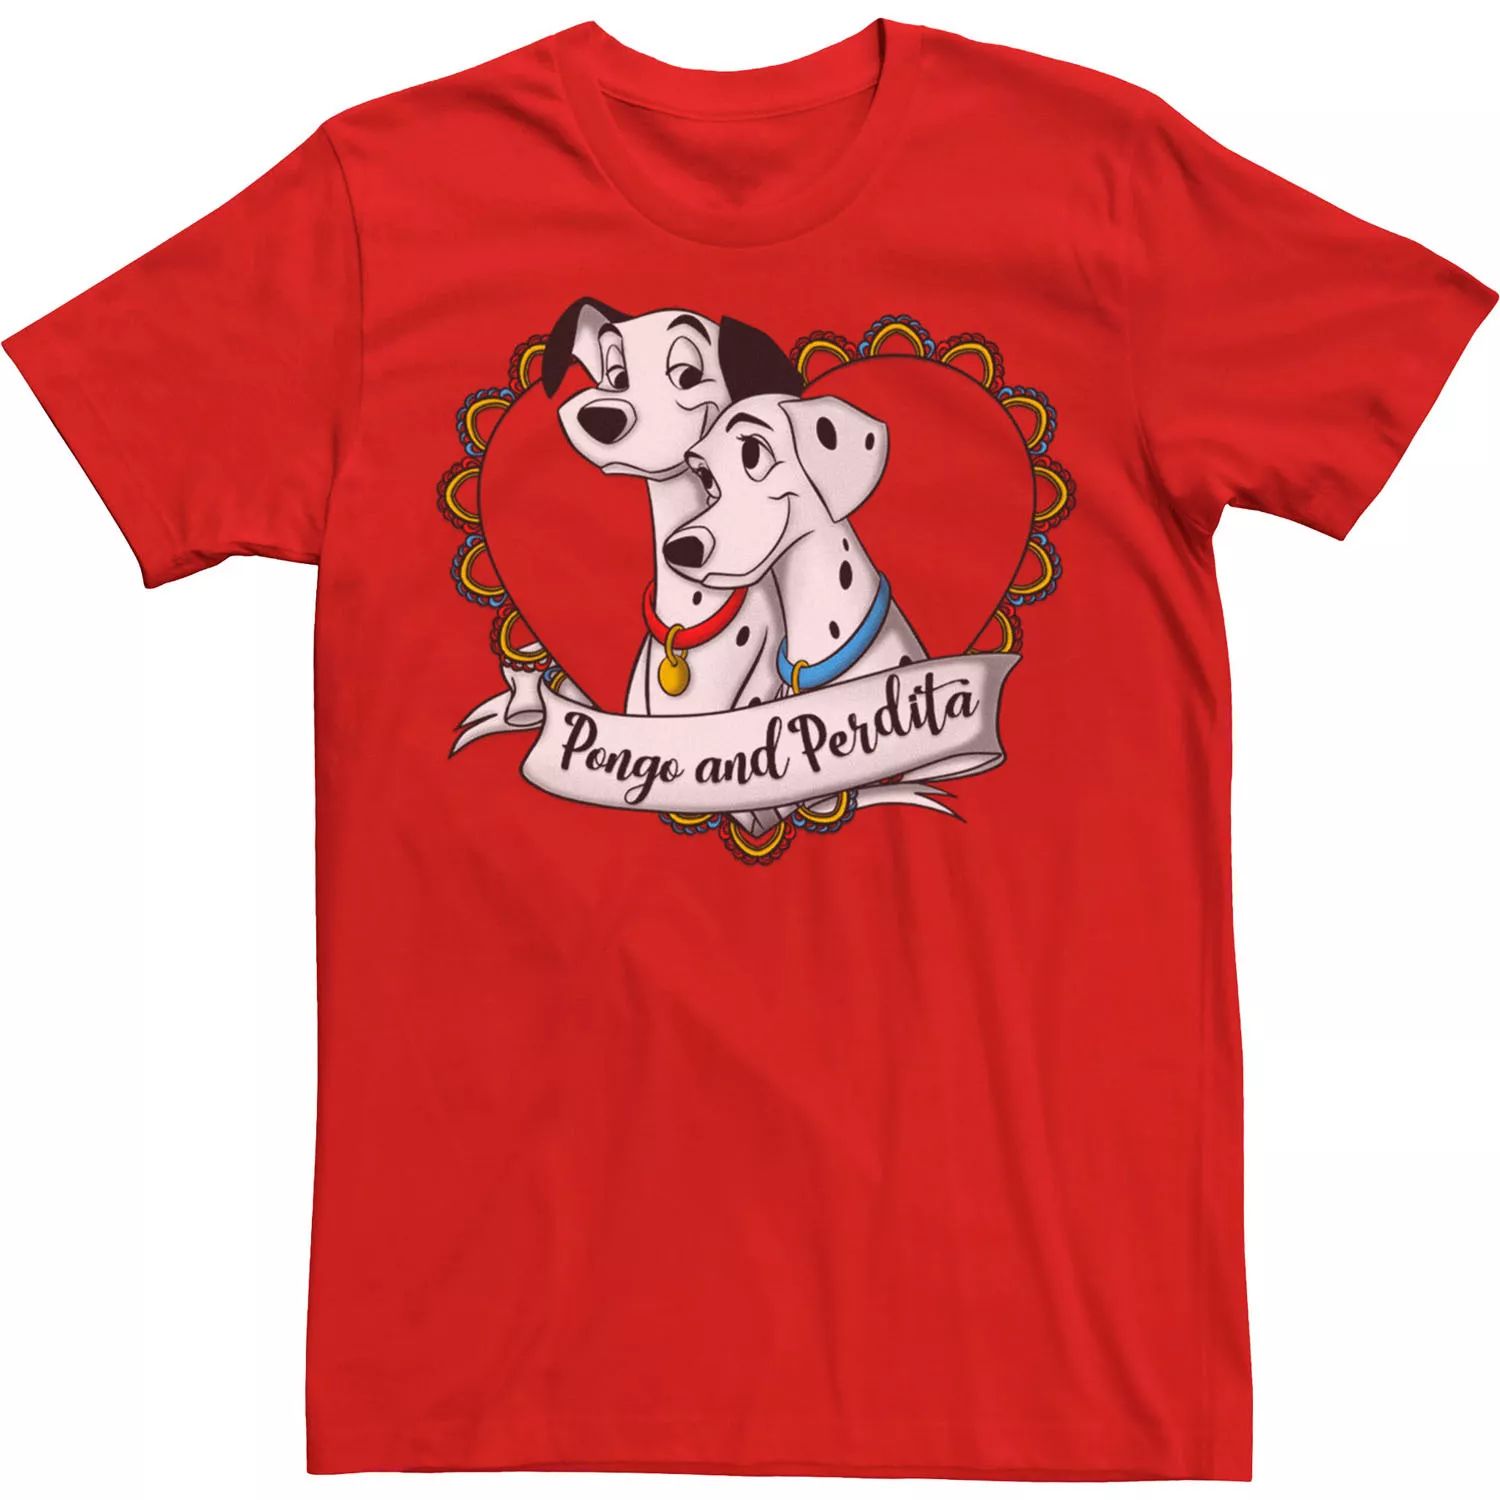 Мужская футболка Disney 101 далматинец Pongo and Perdita с градиентным сердцем Licensed Character, красный мужская футболка собака далматинец s красный